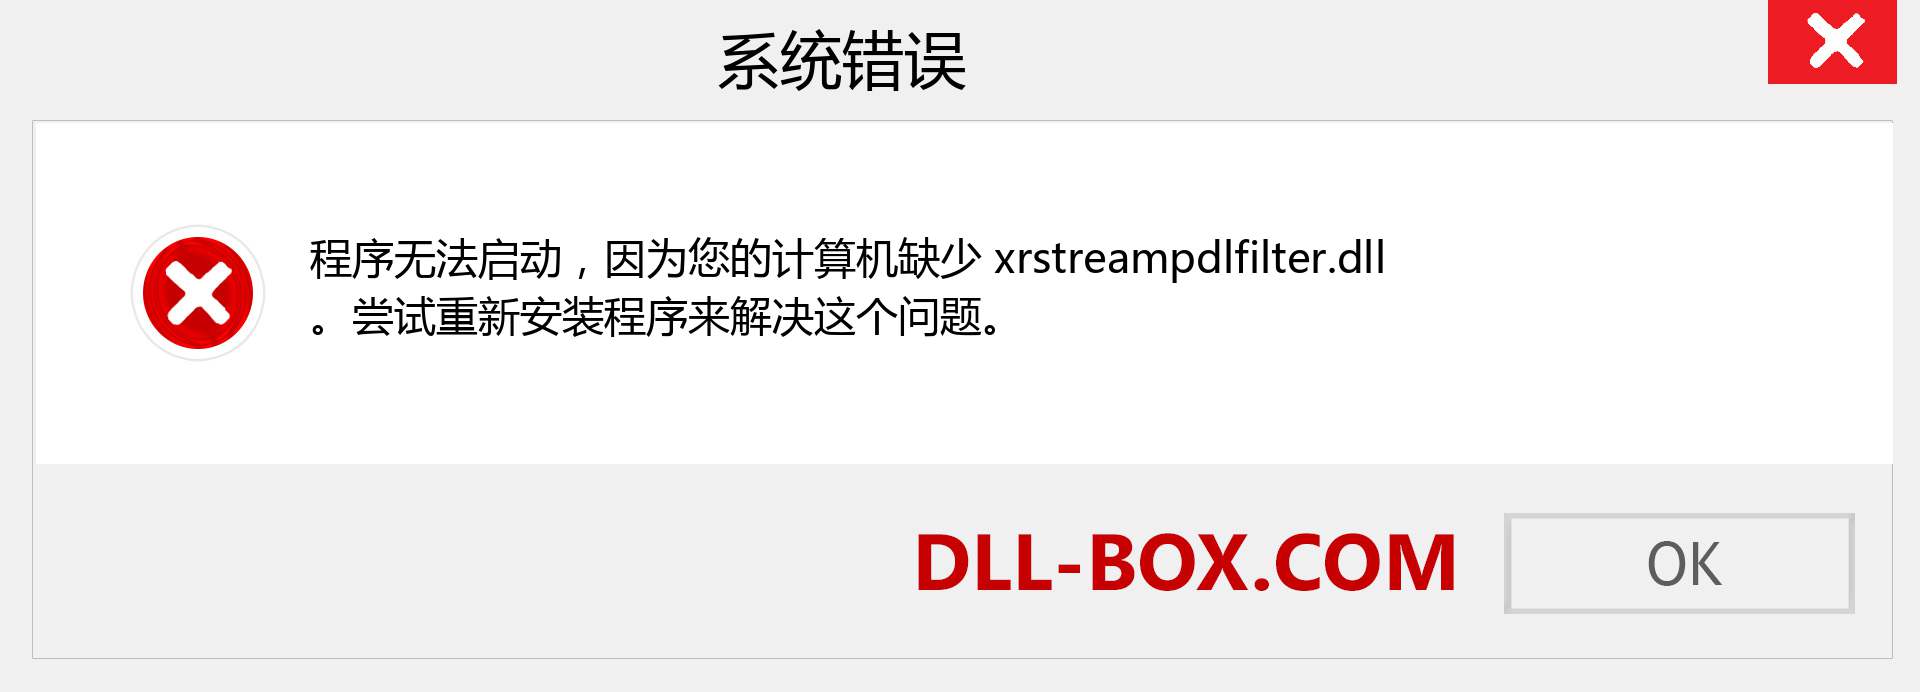 xrstreampdlfilter.dll 文件丢失？。 适用于 Windows 7、8、10 的下载 - 修复 Windows、照片、图像上的 xrstreampdlfilter dll 丢失错误